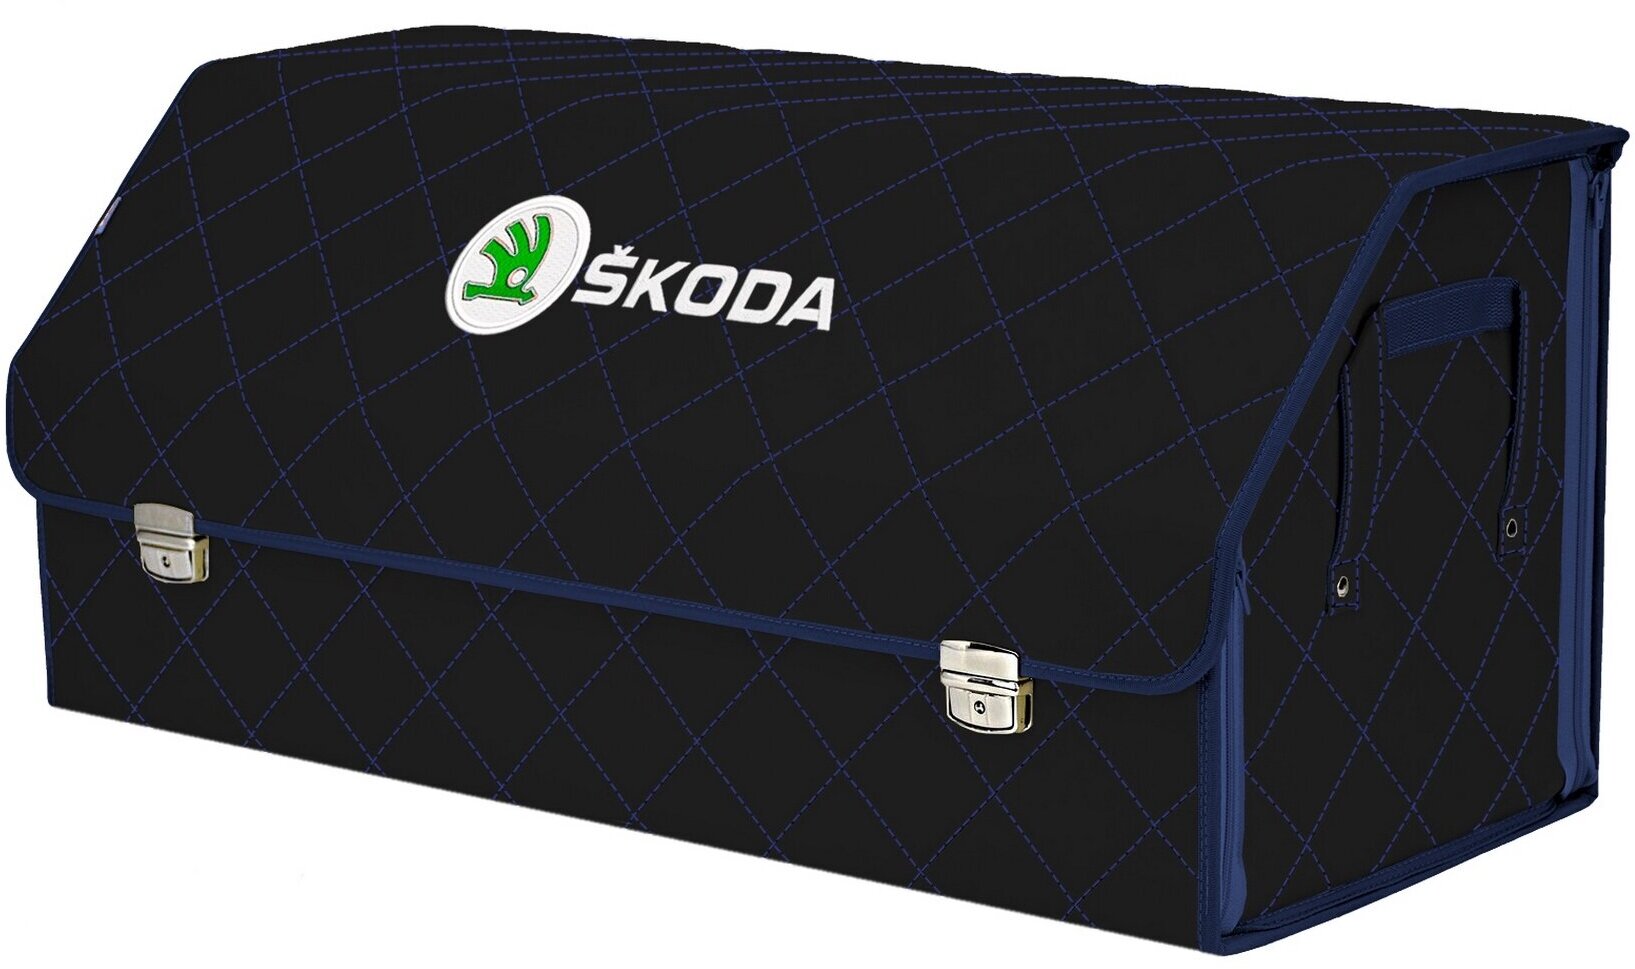 Органайзер-саквояж в багажник "Союз Премиум" (размер XXL). Цвет: черный с синей прострочкой Ромб и вышивкой Skoda (Шкода).